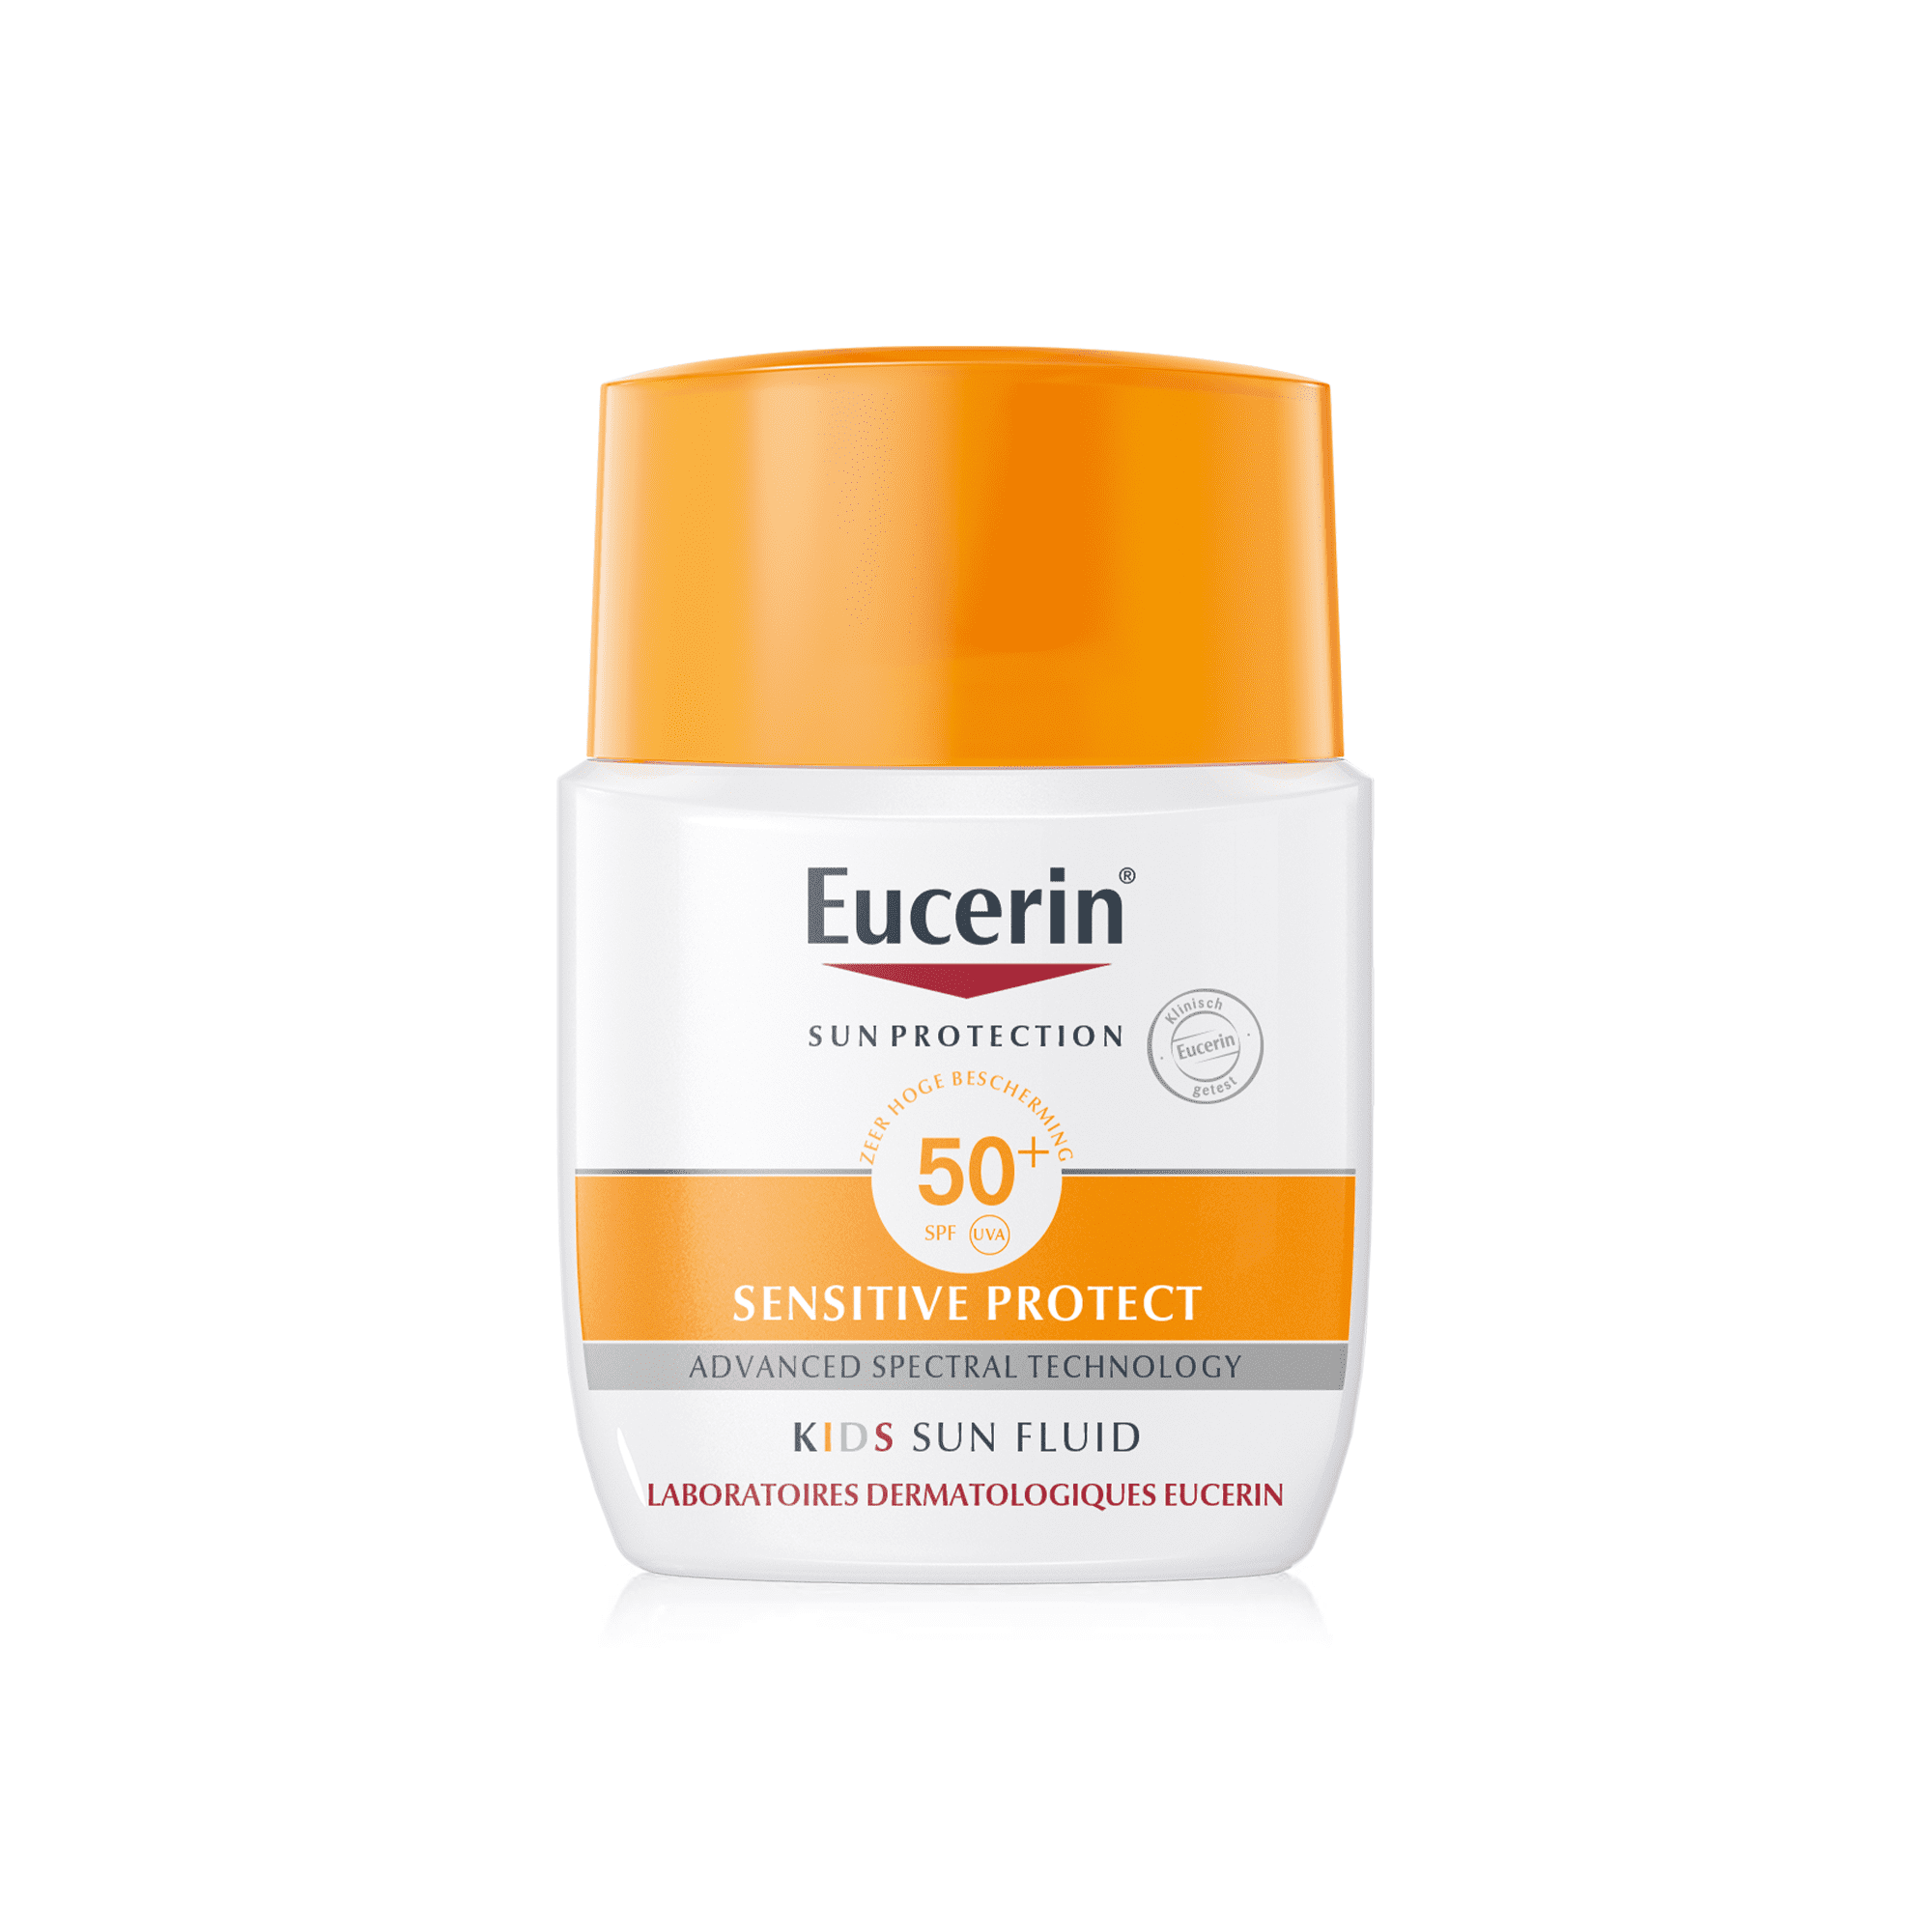 Eucerin Sensitive Protect Kids Sun Fluid SPF 50+